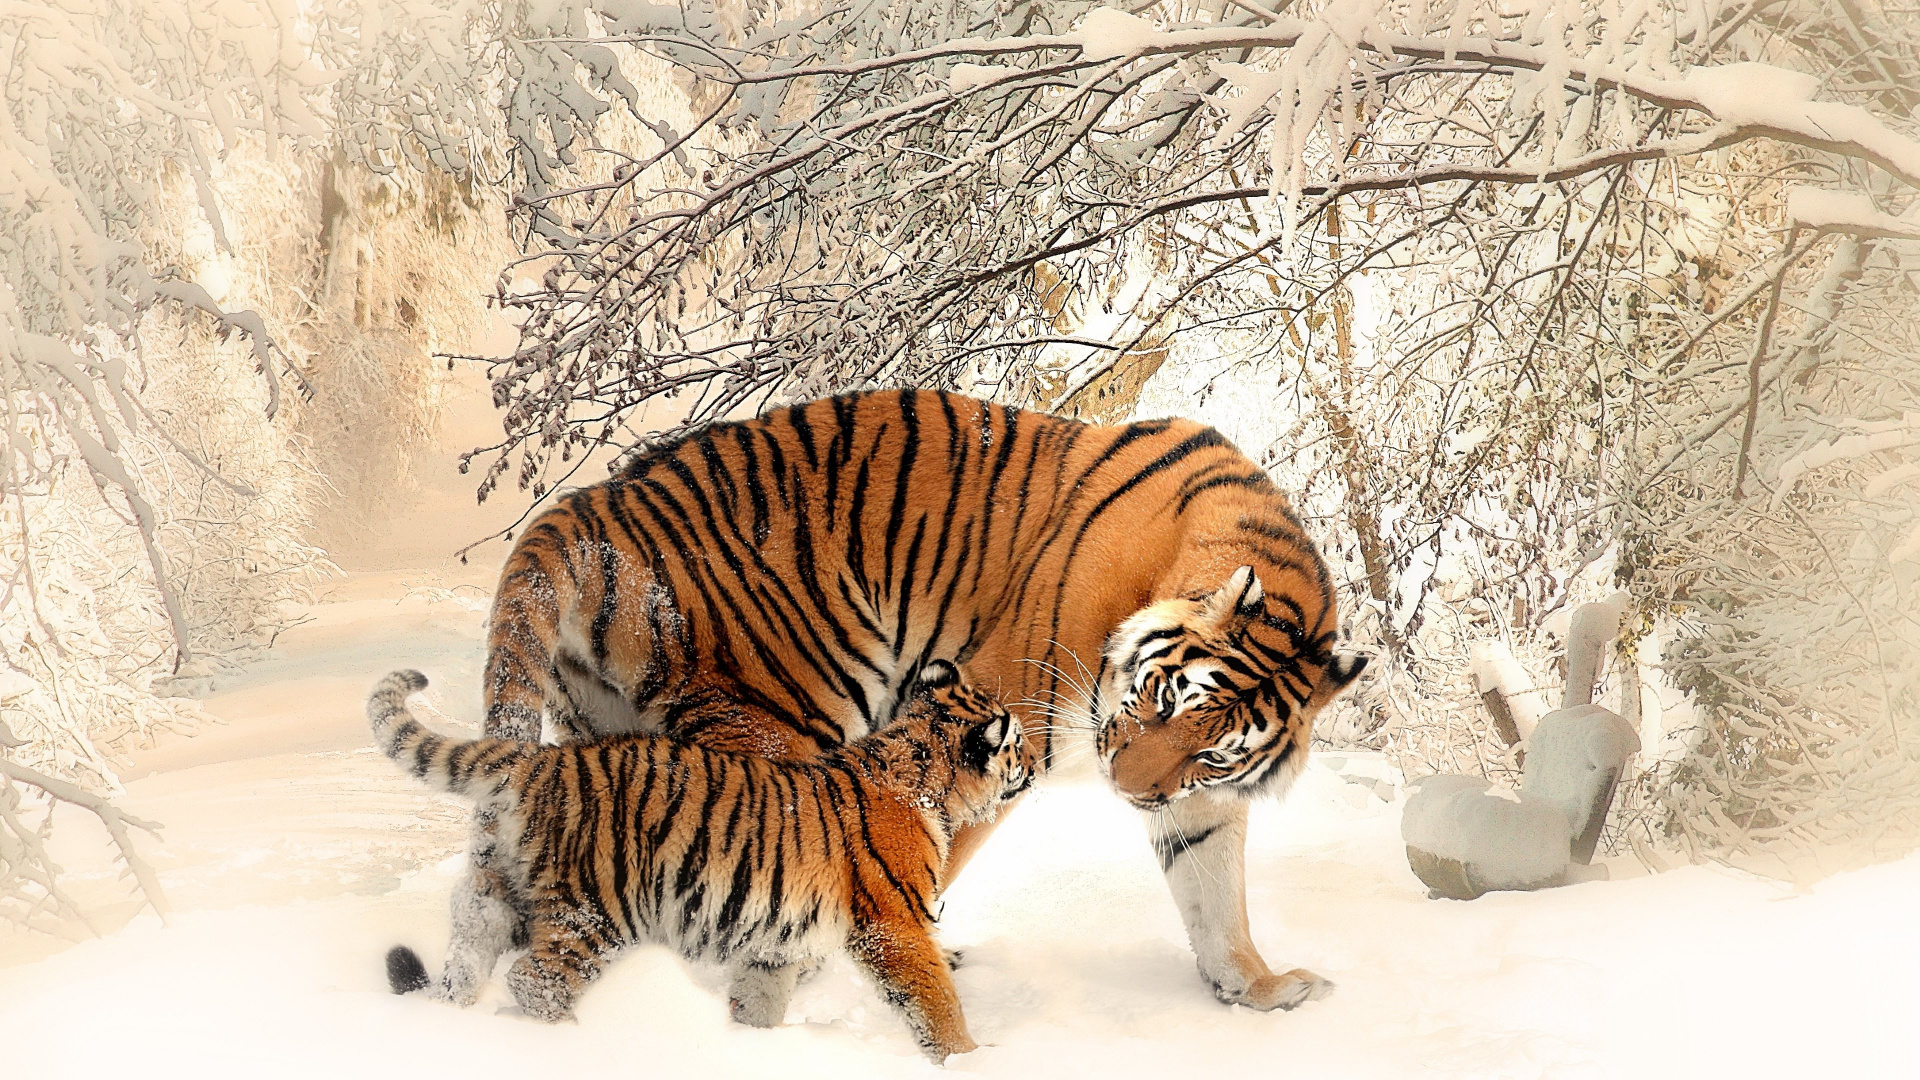 Tiger, Der Tagsüber Auf Schneebedecktem Boden Läuft. Wallpaper in 1920x1080 Resolution